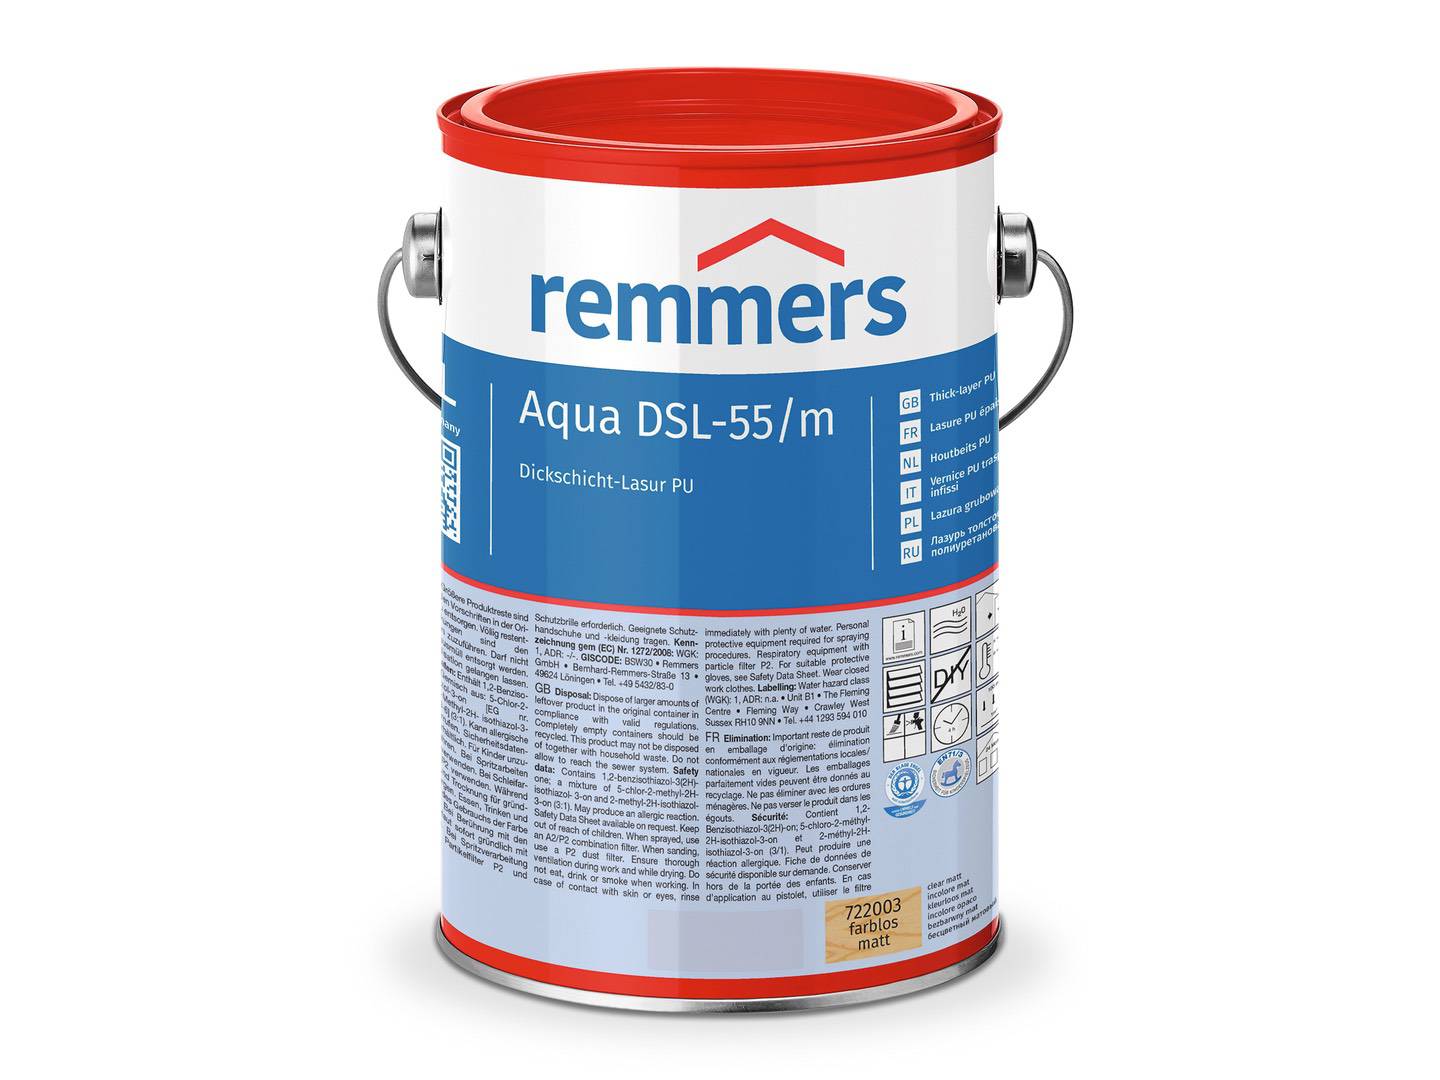 REMMERS Aqua DSL-55-Dickschicht-Lasur PU eiche hell (RC-365) seidenglänzend 0,75 l